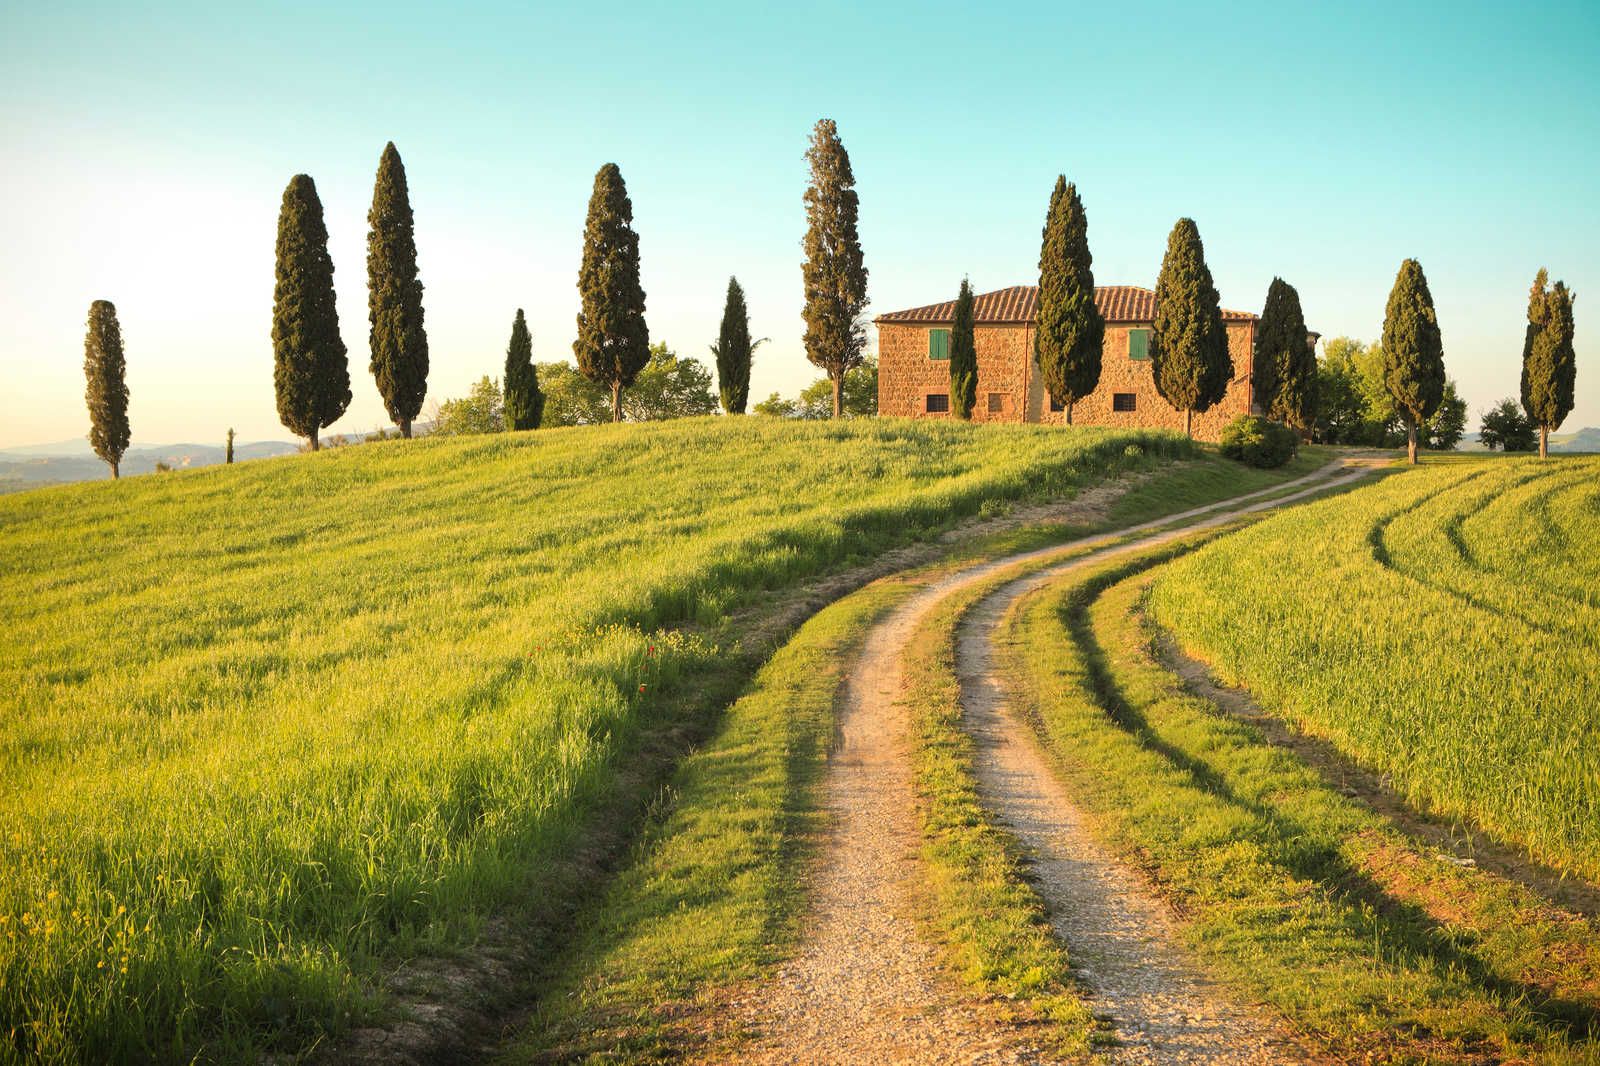             Lienzo Naturaleza Toscana con Villa y Cipreses - 0,90 m x 0,60 m
        